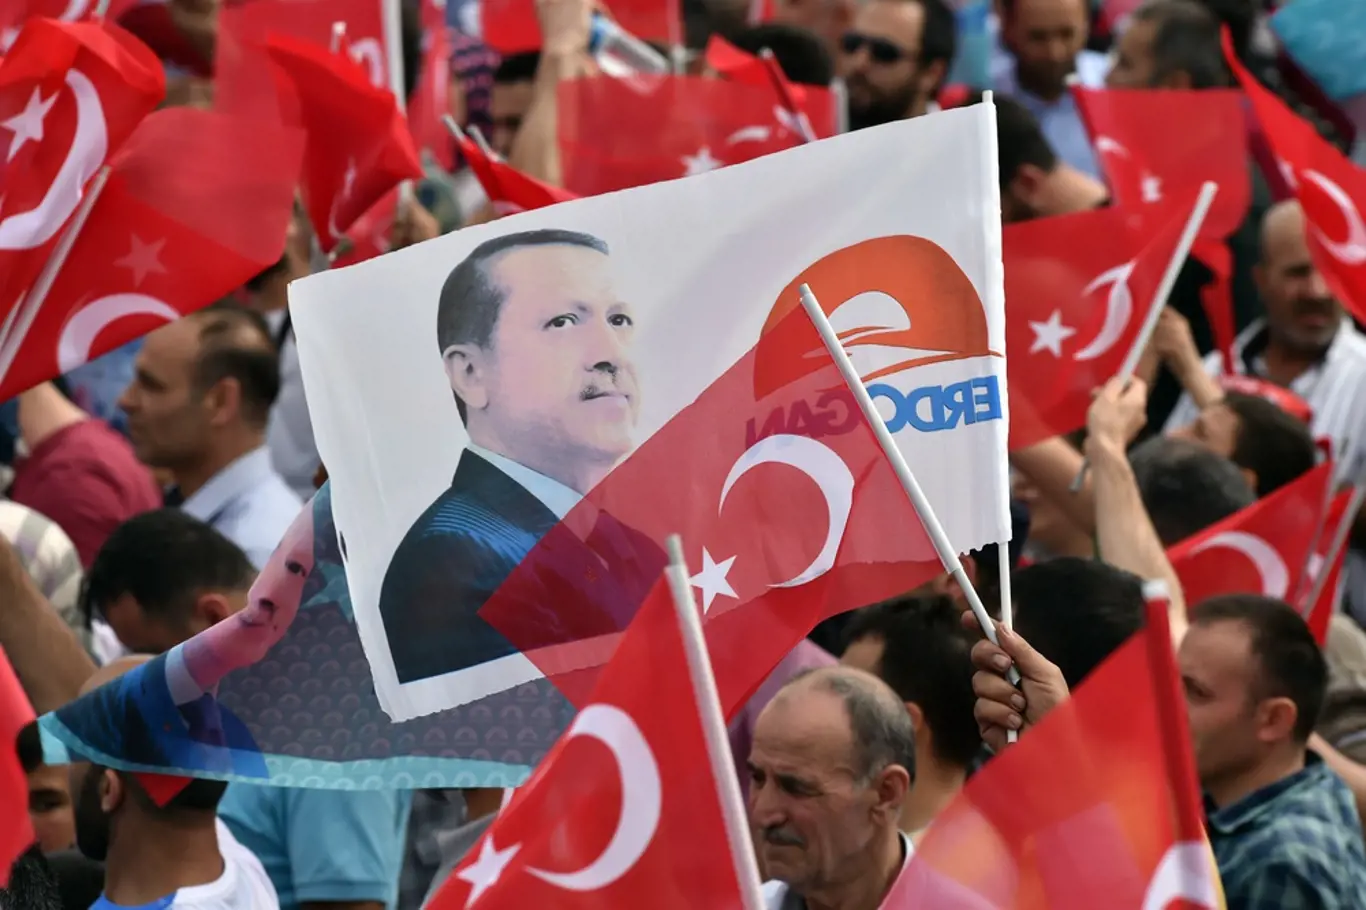 Prezident Recep Tayyip Erdoğan je u moci od roku 2003 a v Turecku se těší velké podpoře.